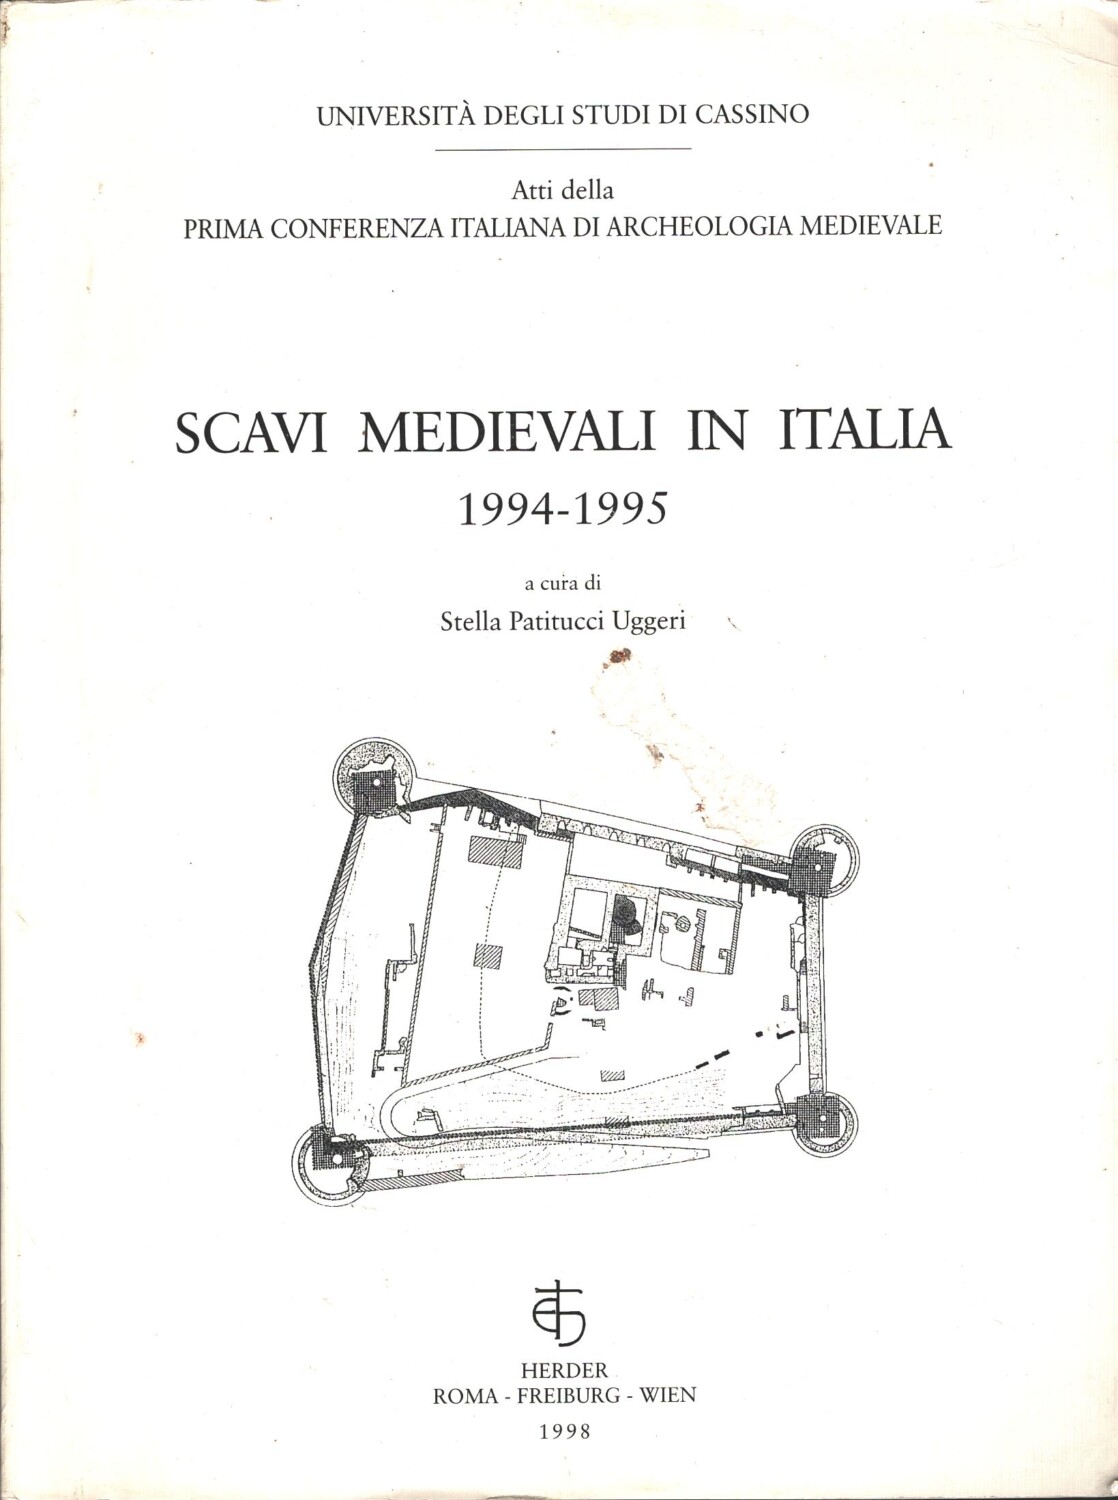 Scavi medievali in Italia 1994-1995 a cura di Stella Patitucci Uggeri ed. Herder